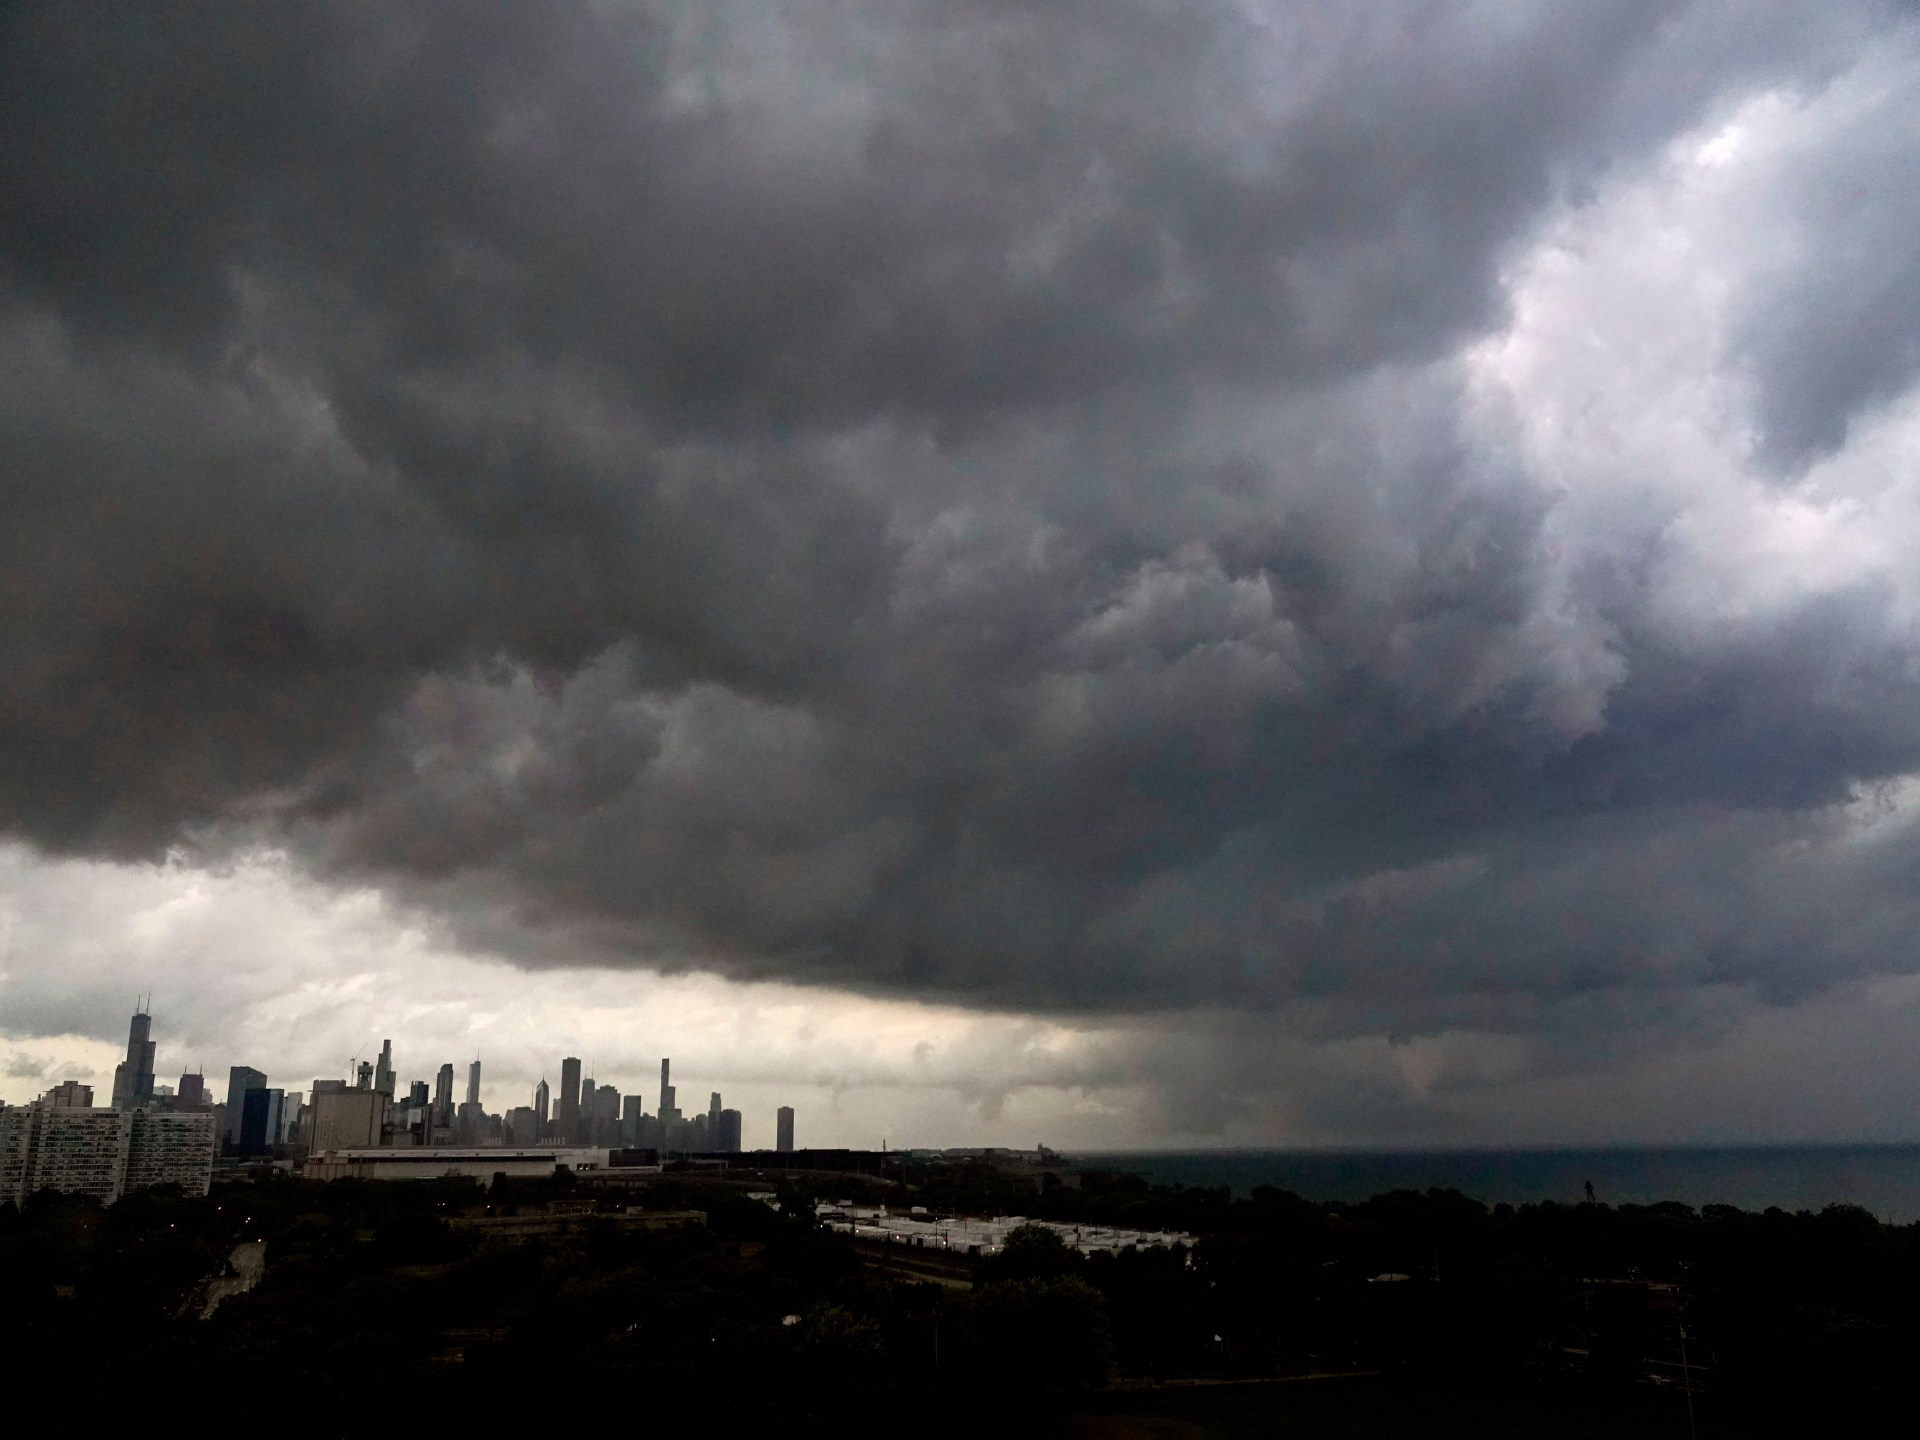 Tornado mendarat di dekat wilayah metropolitan Chicago yang padat penduduk |  Berita Cuaca